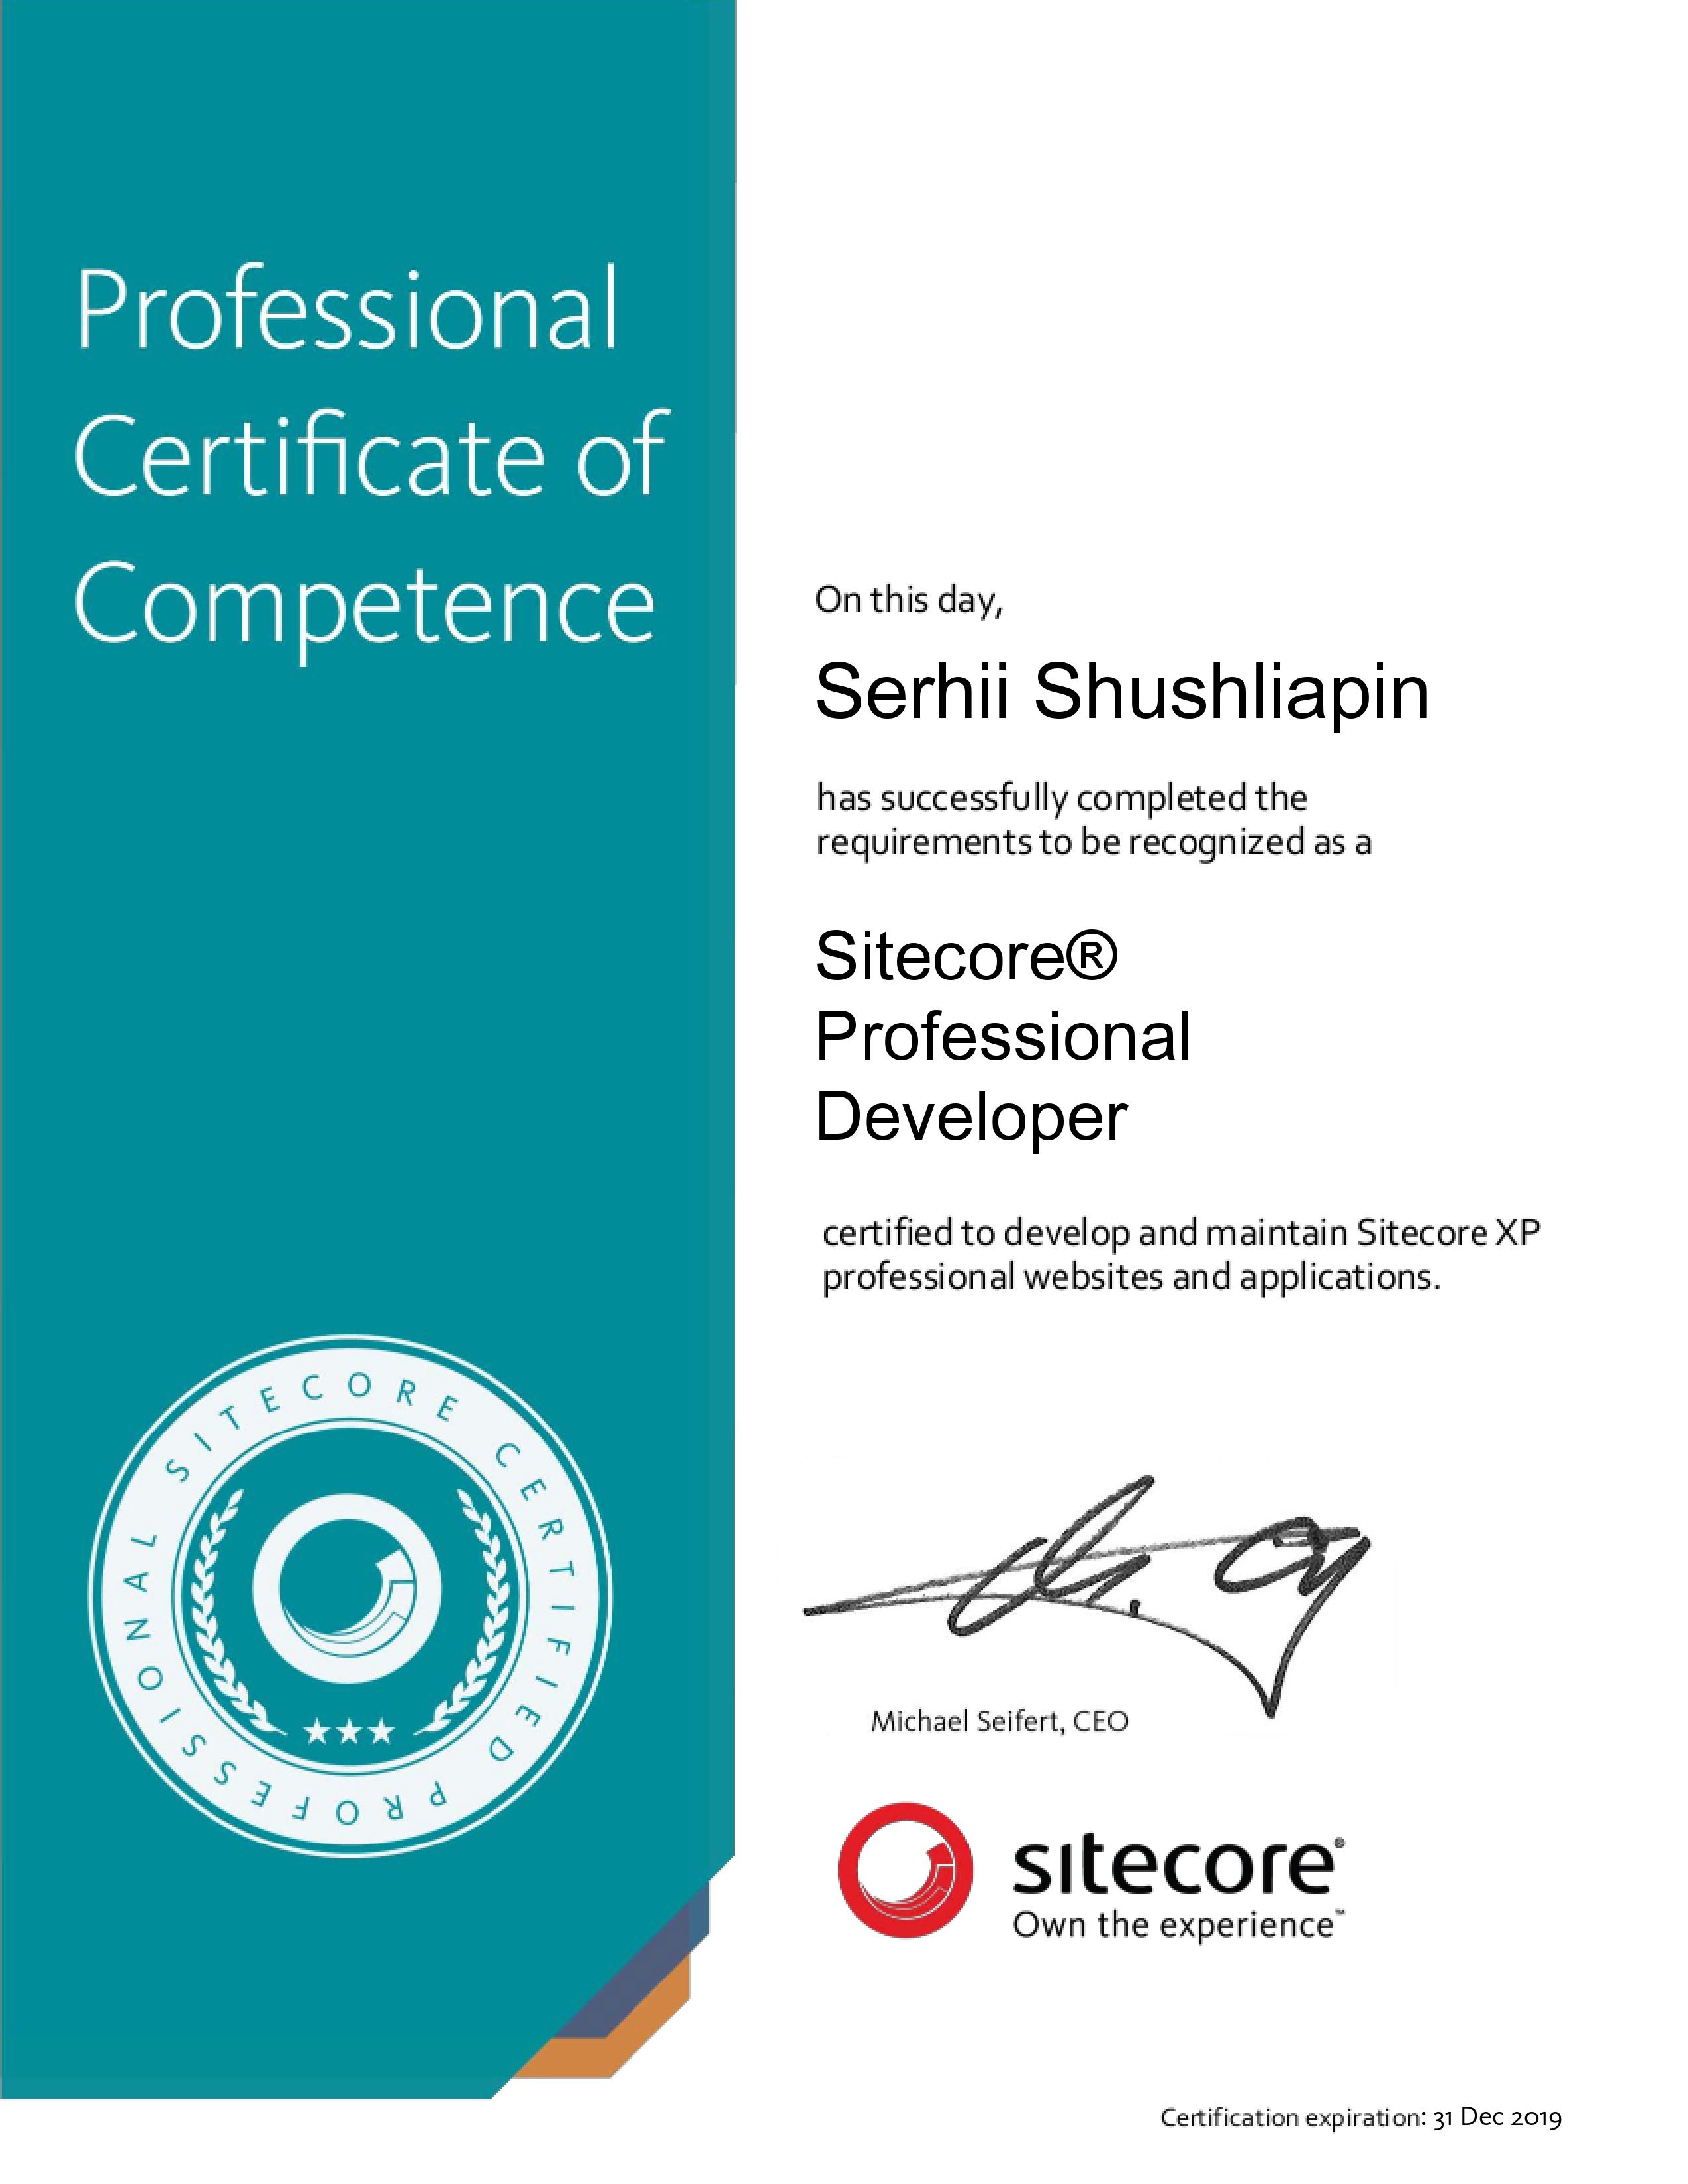 Sitecore® Professional Developer